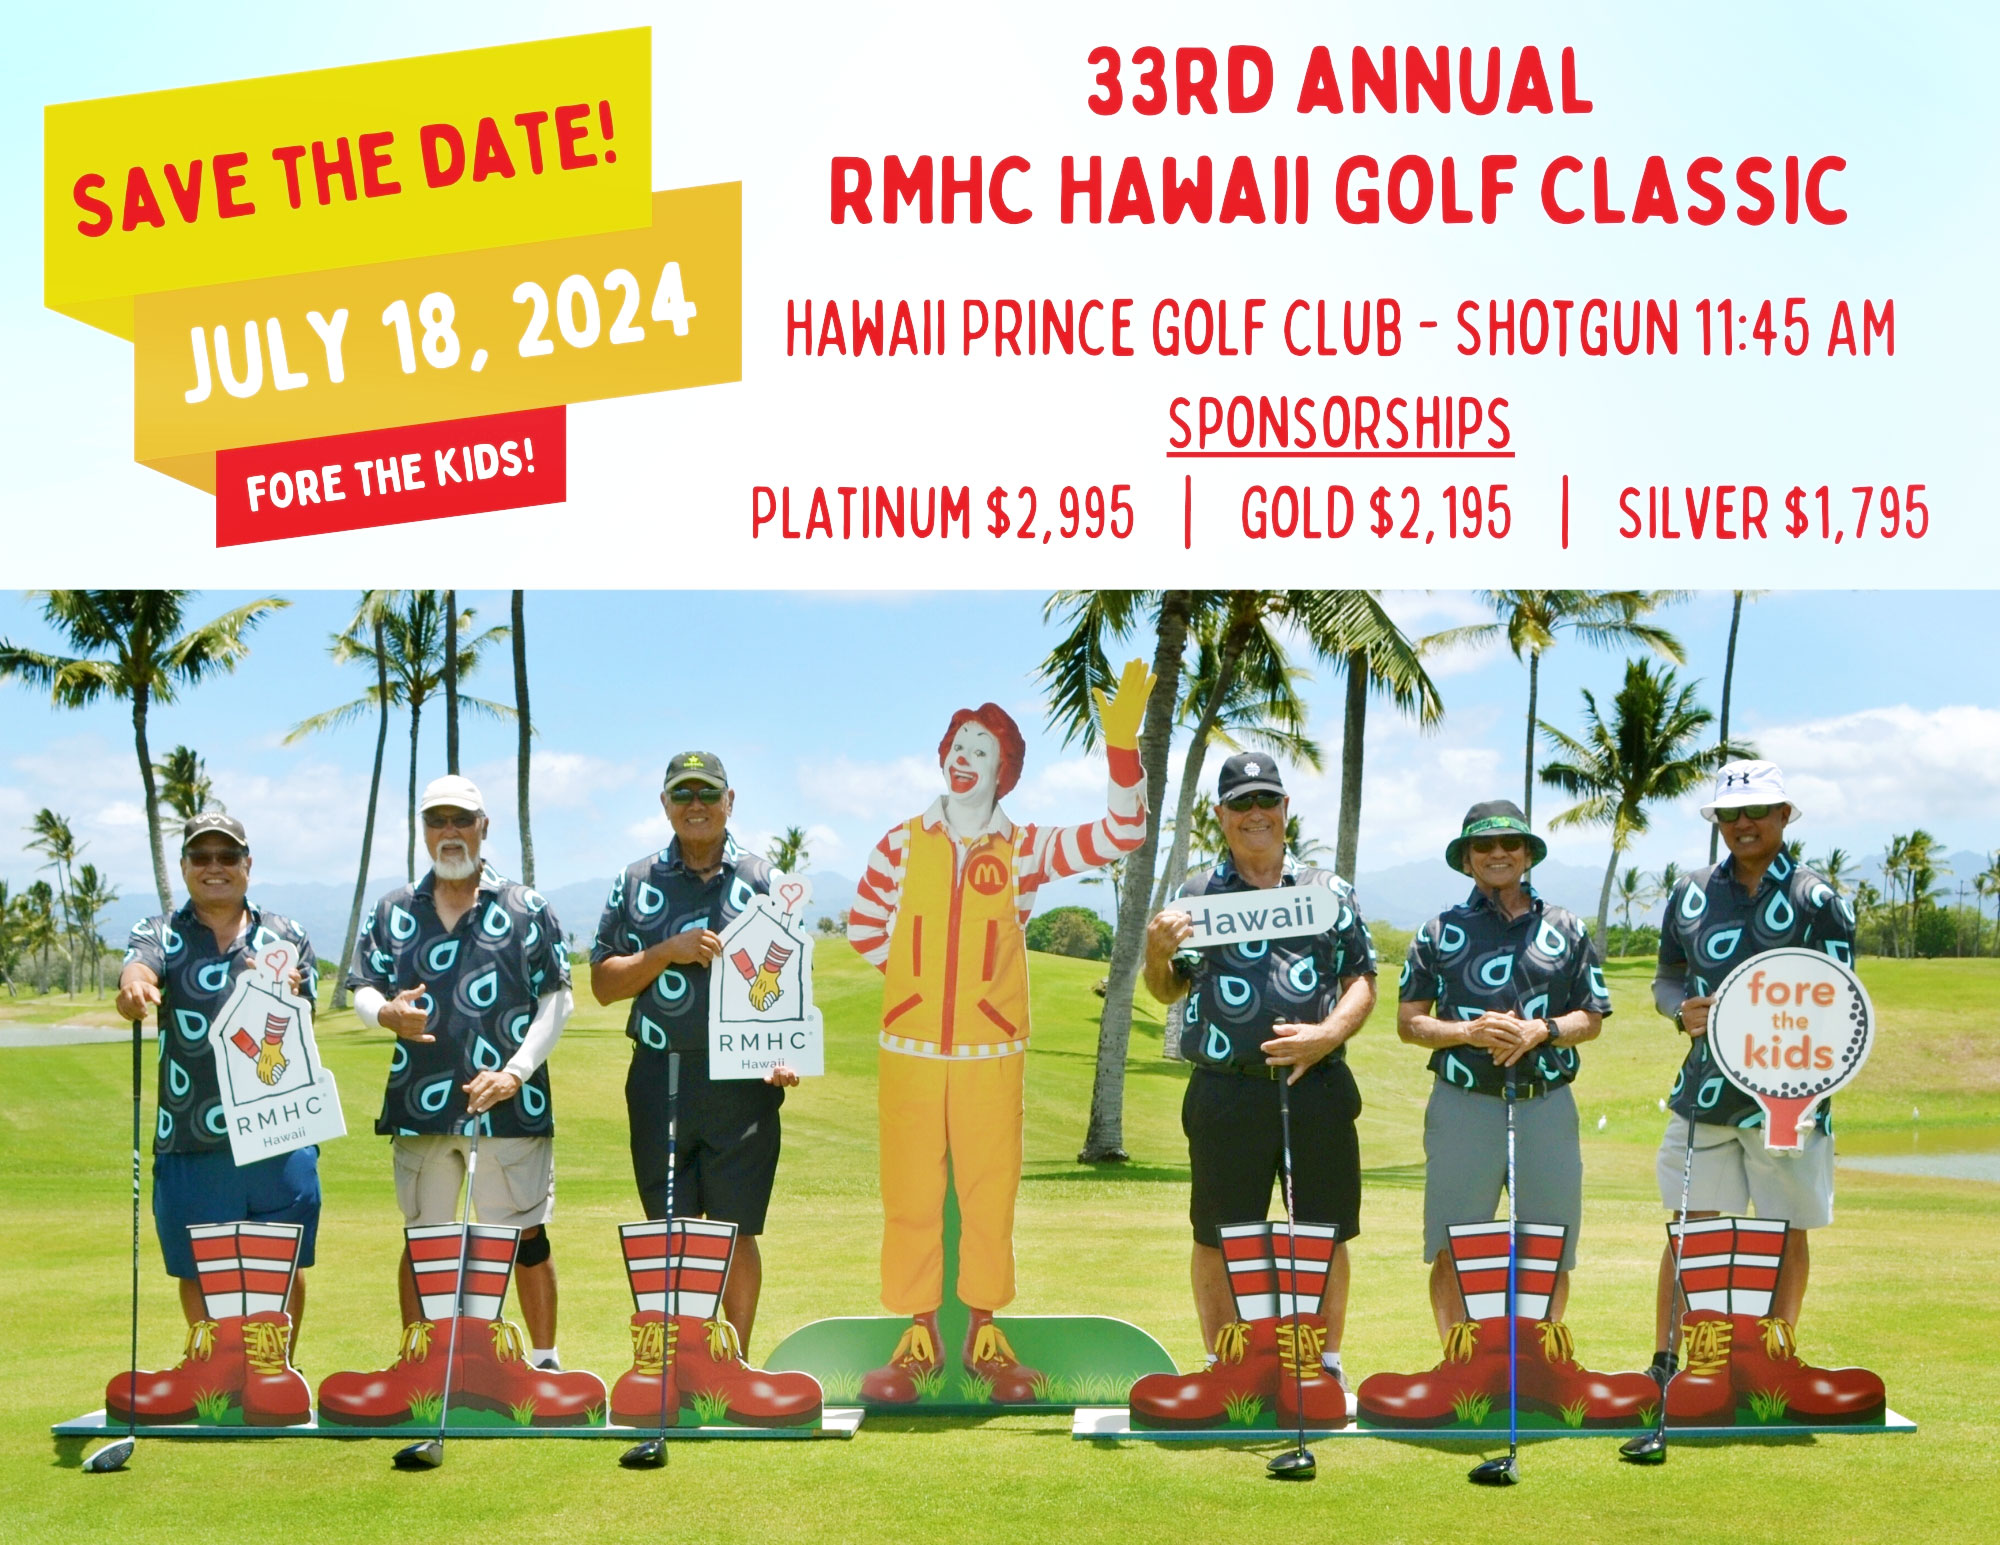 RMHC-Hawaii Annual Golf Tournament announcment